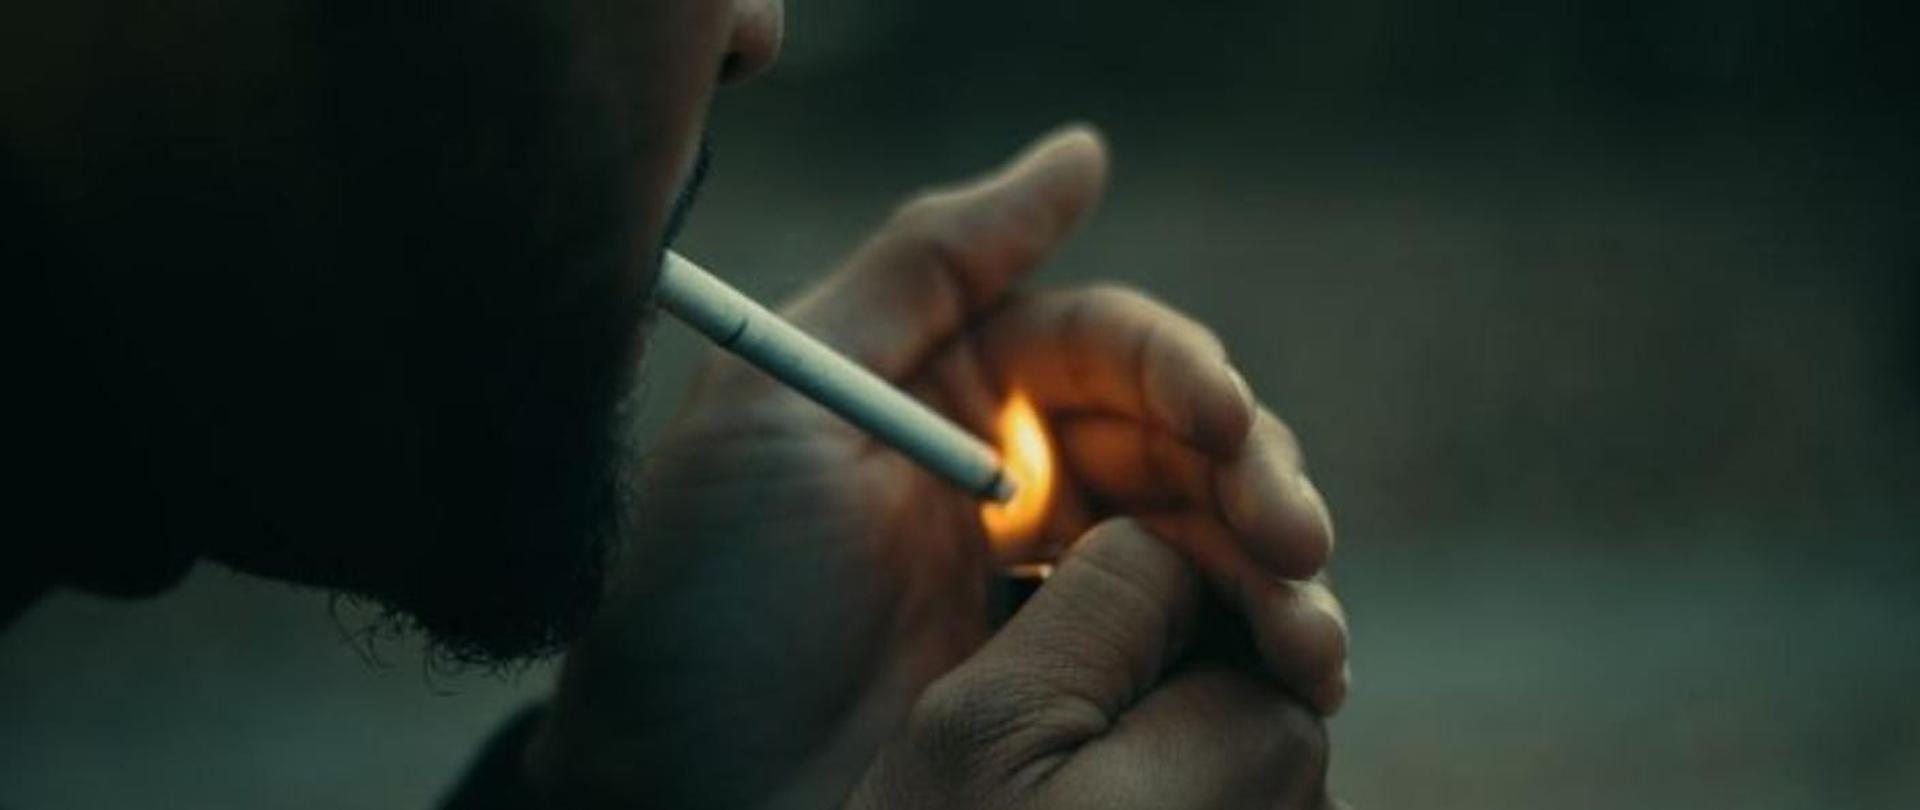 Odpalenie papierosa zapaliczką